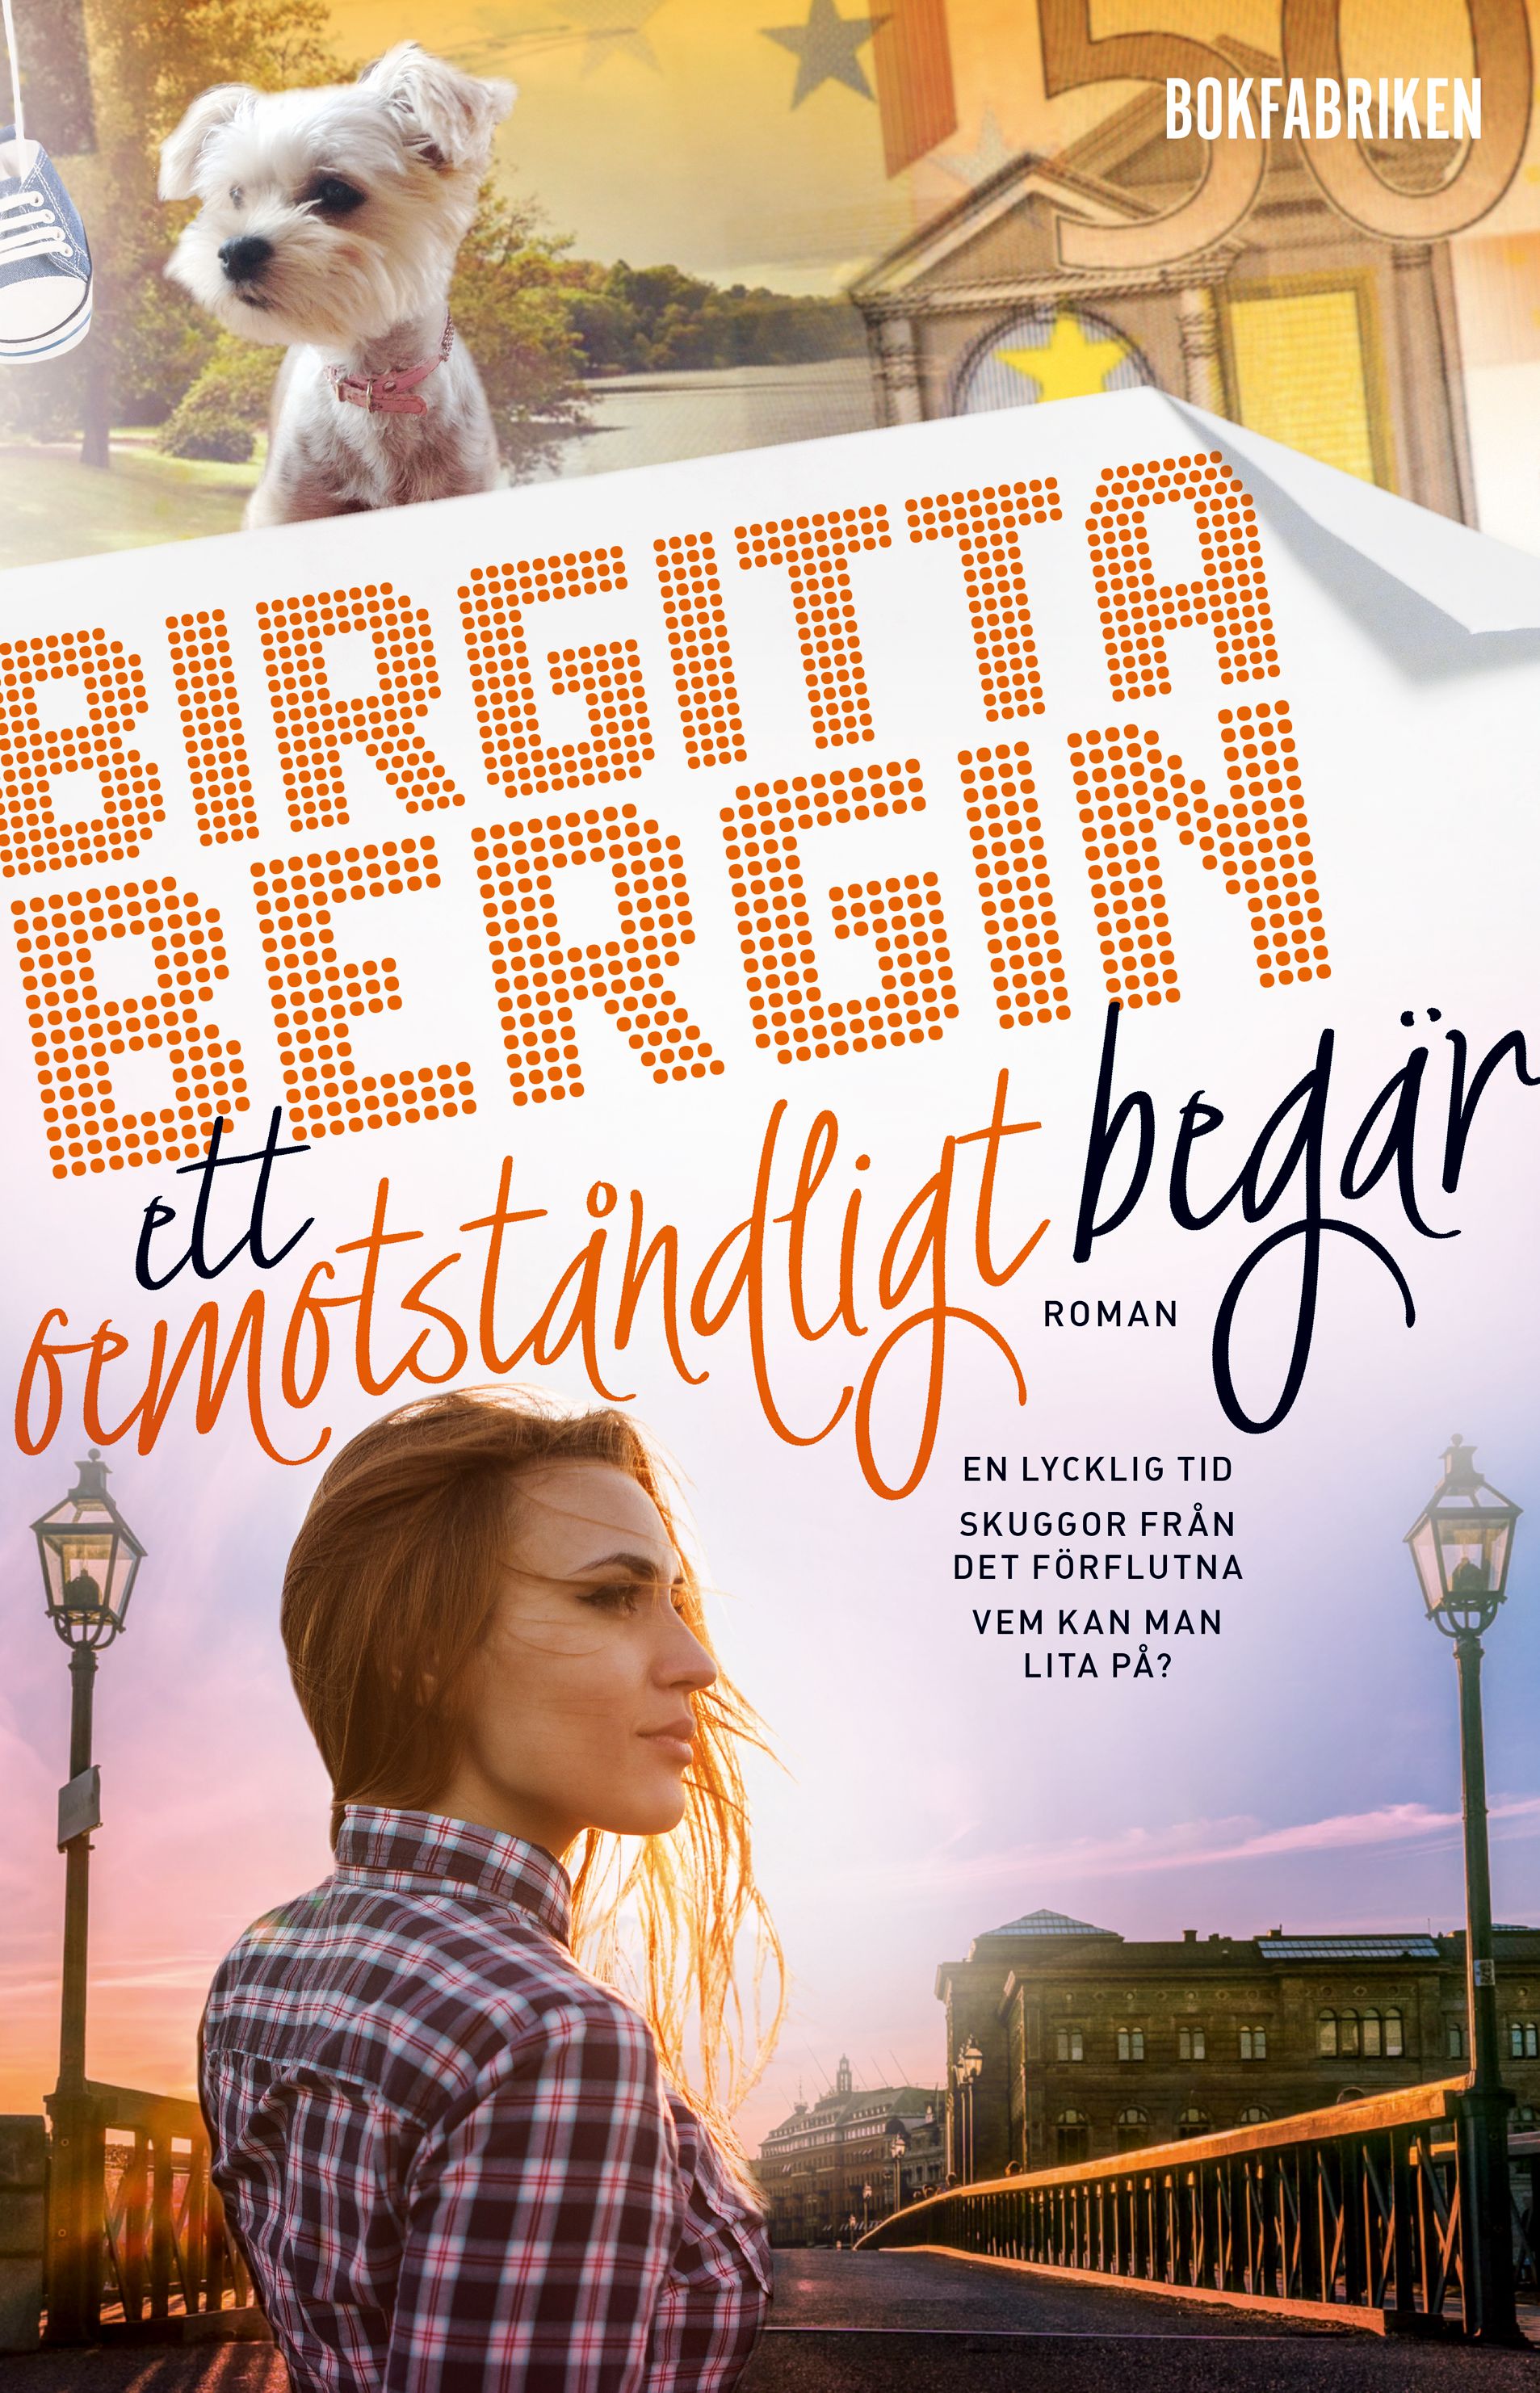 Ett oemotståndligt begär, e-bog af Birgitta Bergin